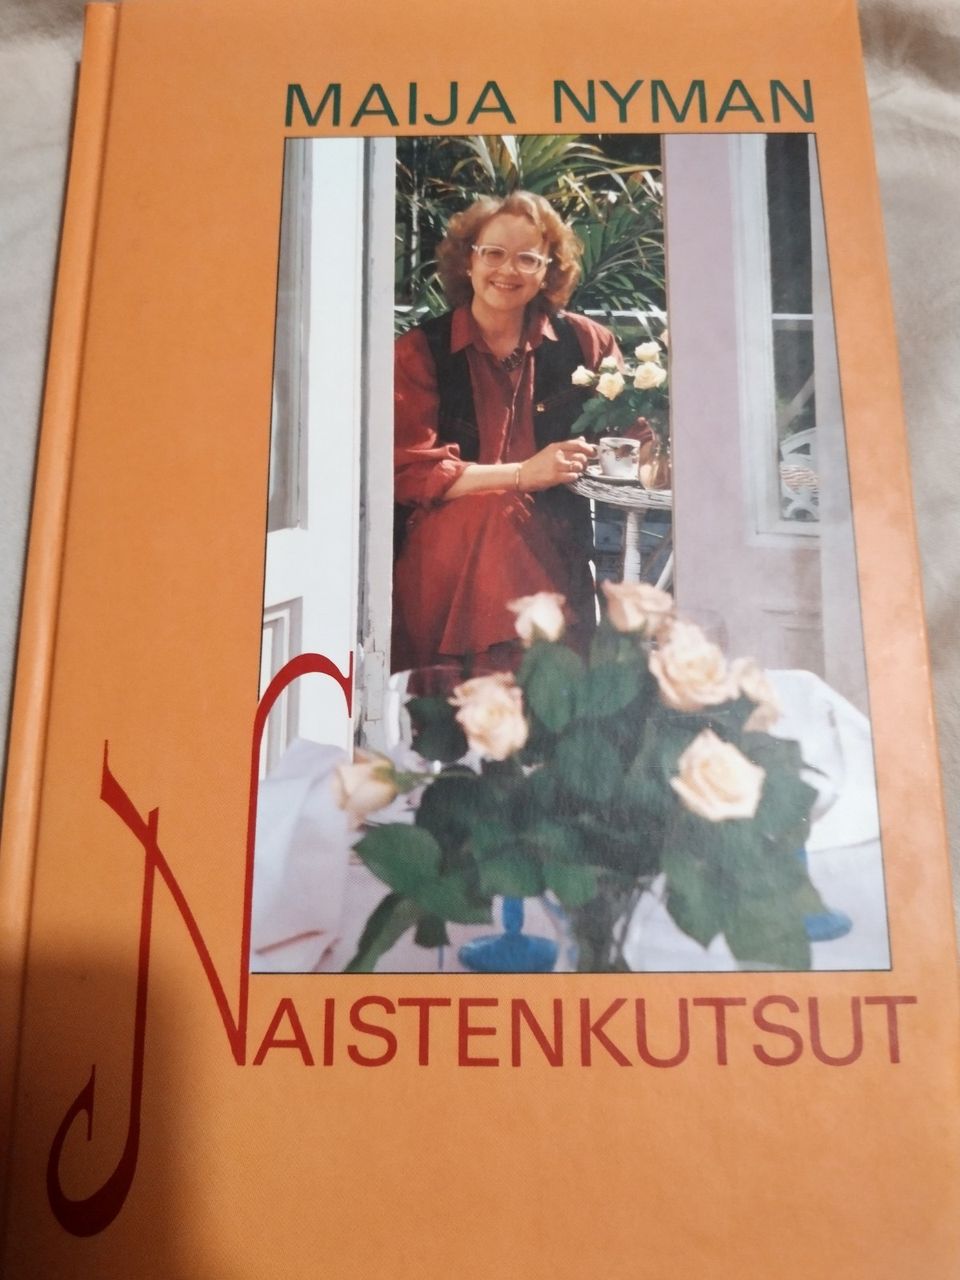 Naistenkutsut - Maija Nyman (signeeraus)